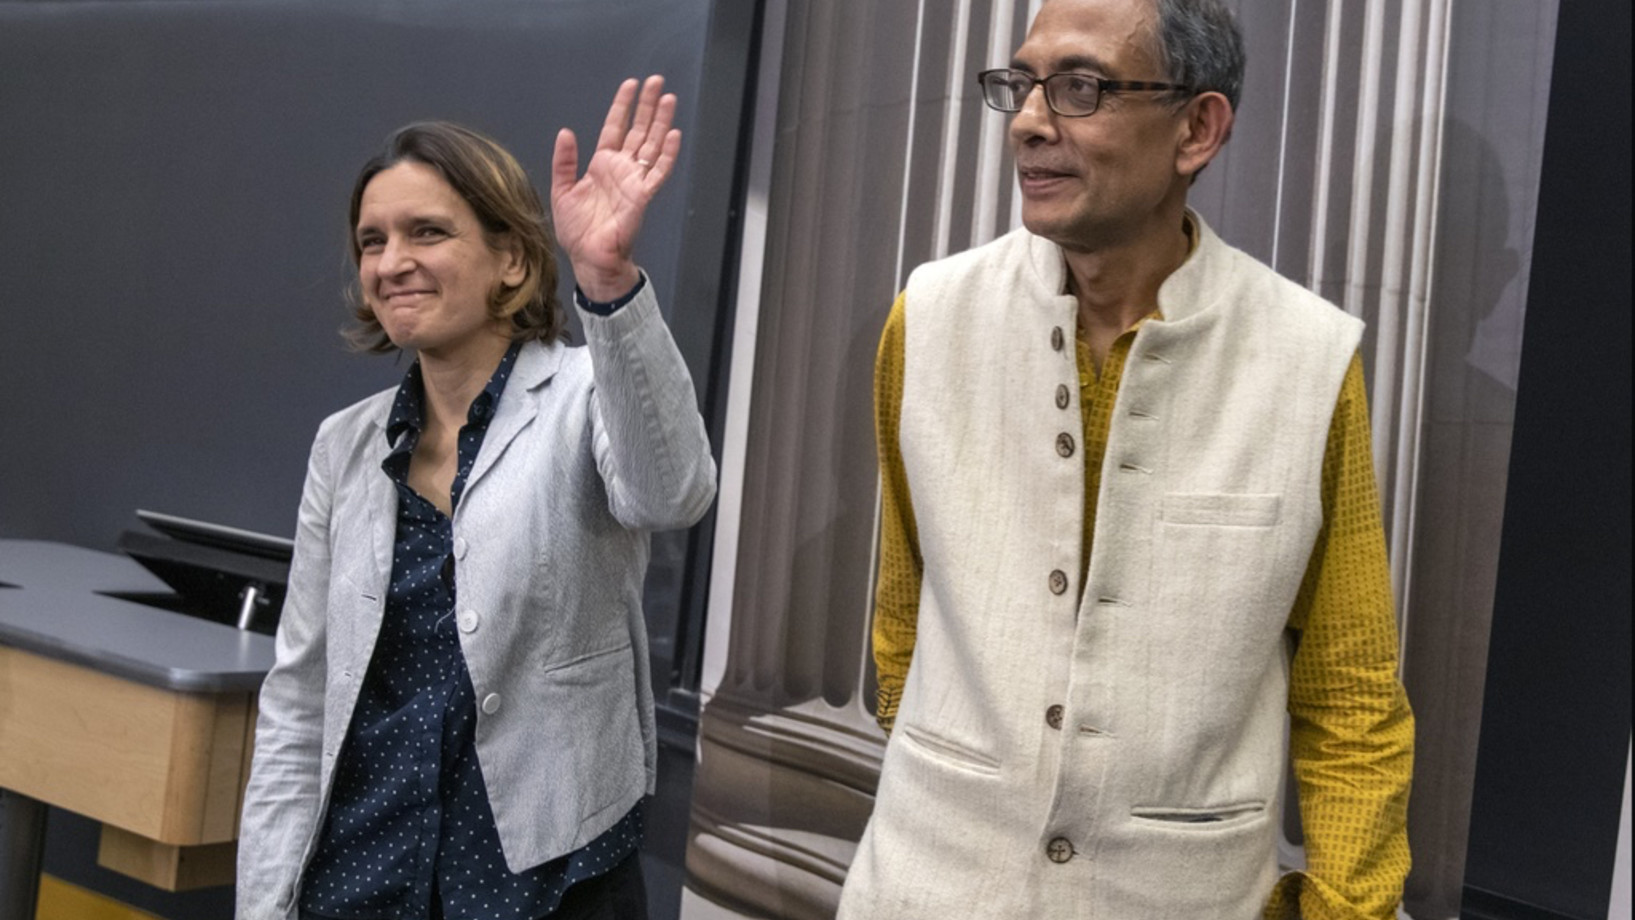 Esther Duflo und Abhijit Banerjee bei einer Medienkonferenz am 14. Oktober 2019 im Massachusetts Institute of Technology in Cambridge MIT. Gemeinsam mit dem Harvard-Ökonomen Michael Kremer haben sie den Nobelpreis 2019 für Ökonomie gewonnen. (Keystone/AP, Michael Dwyer)